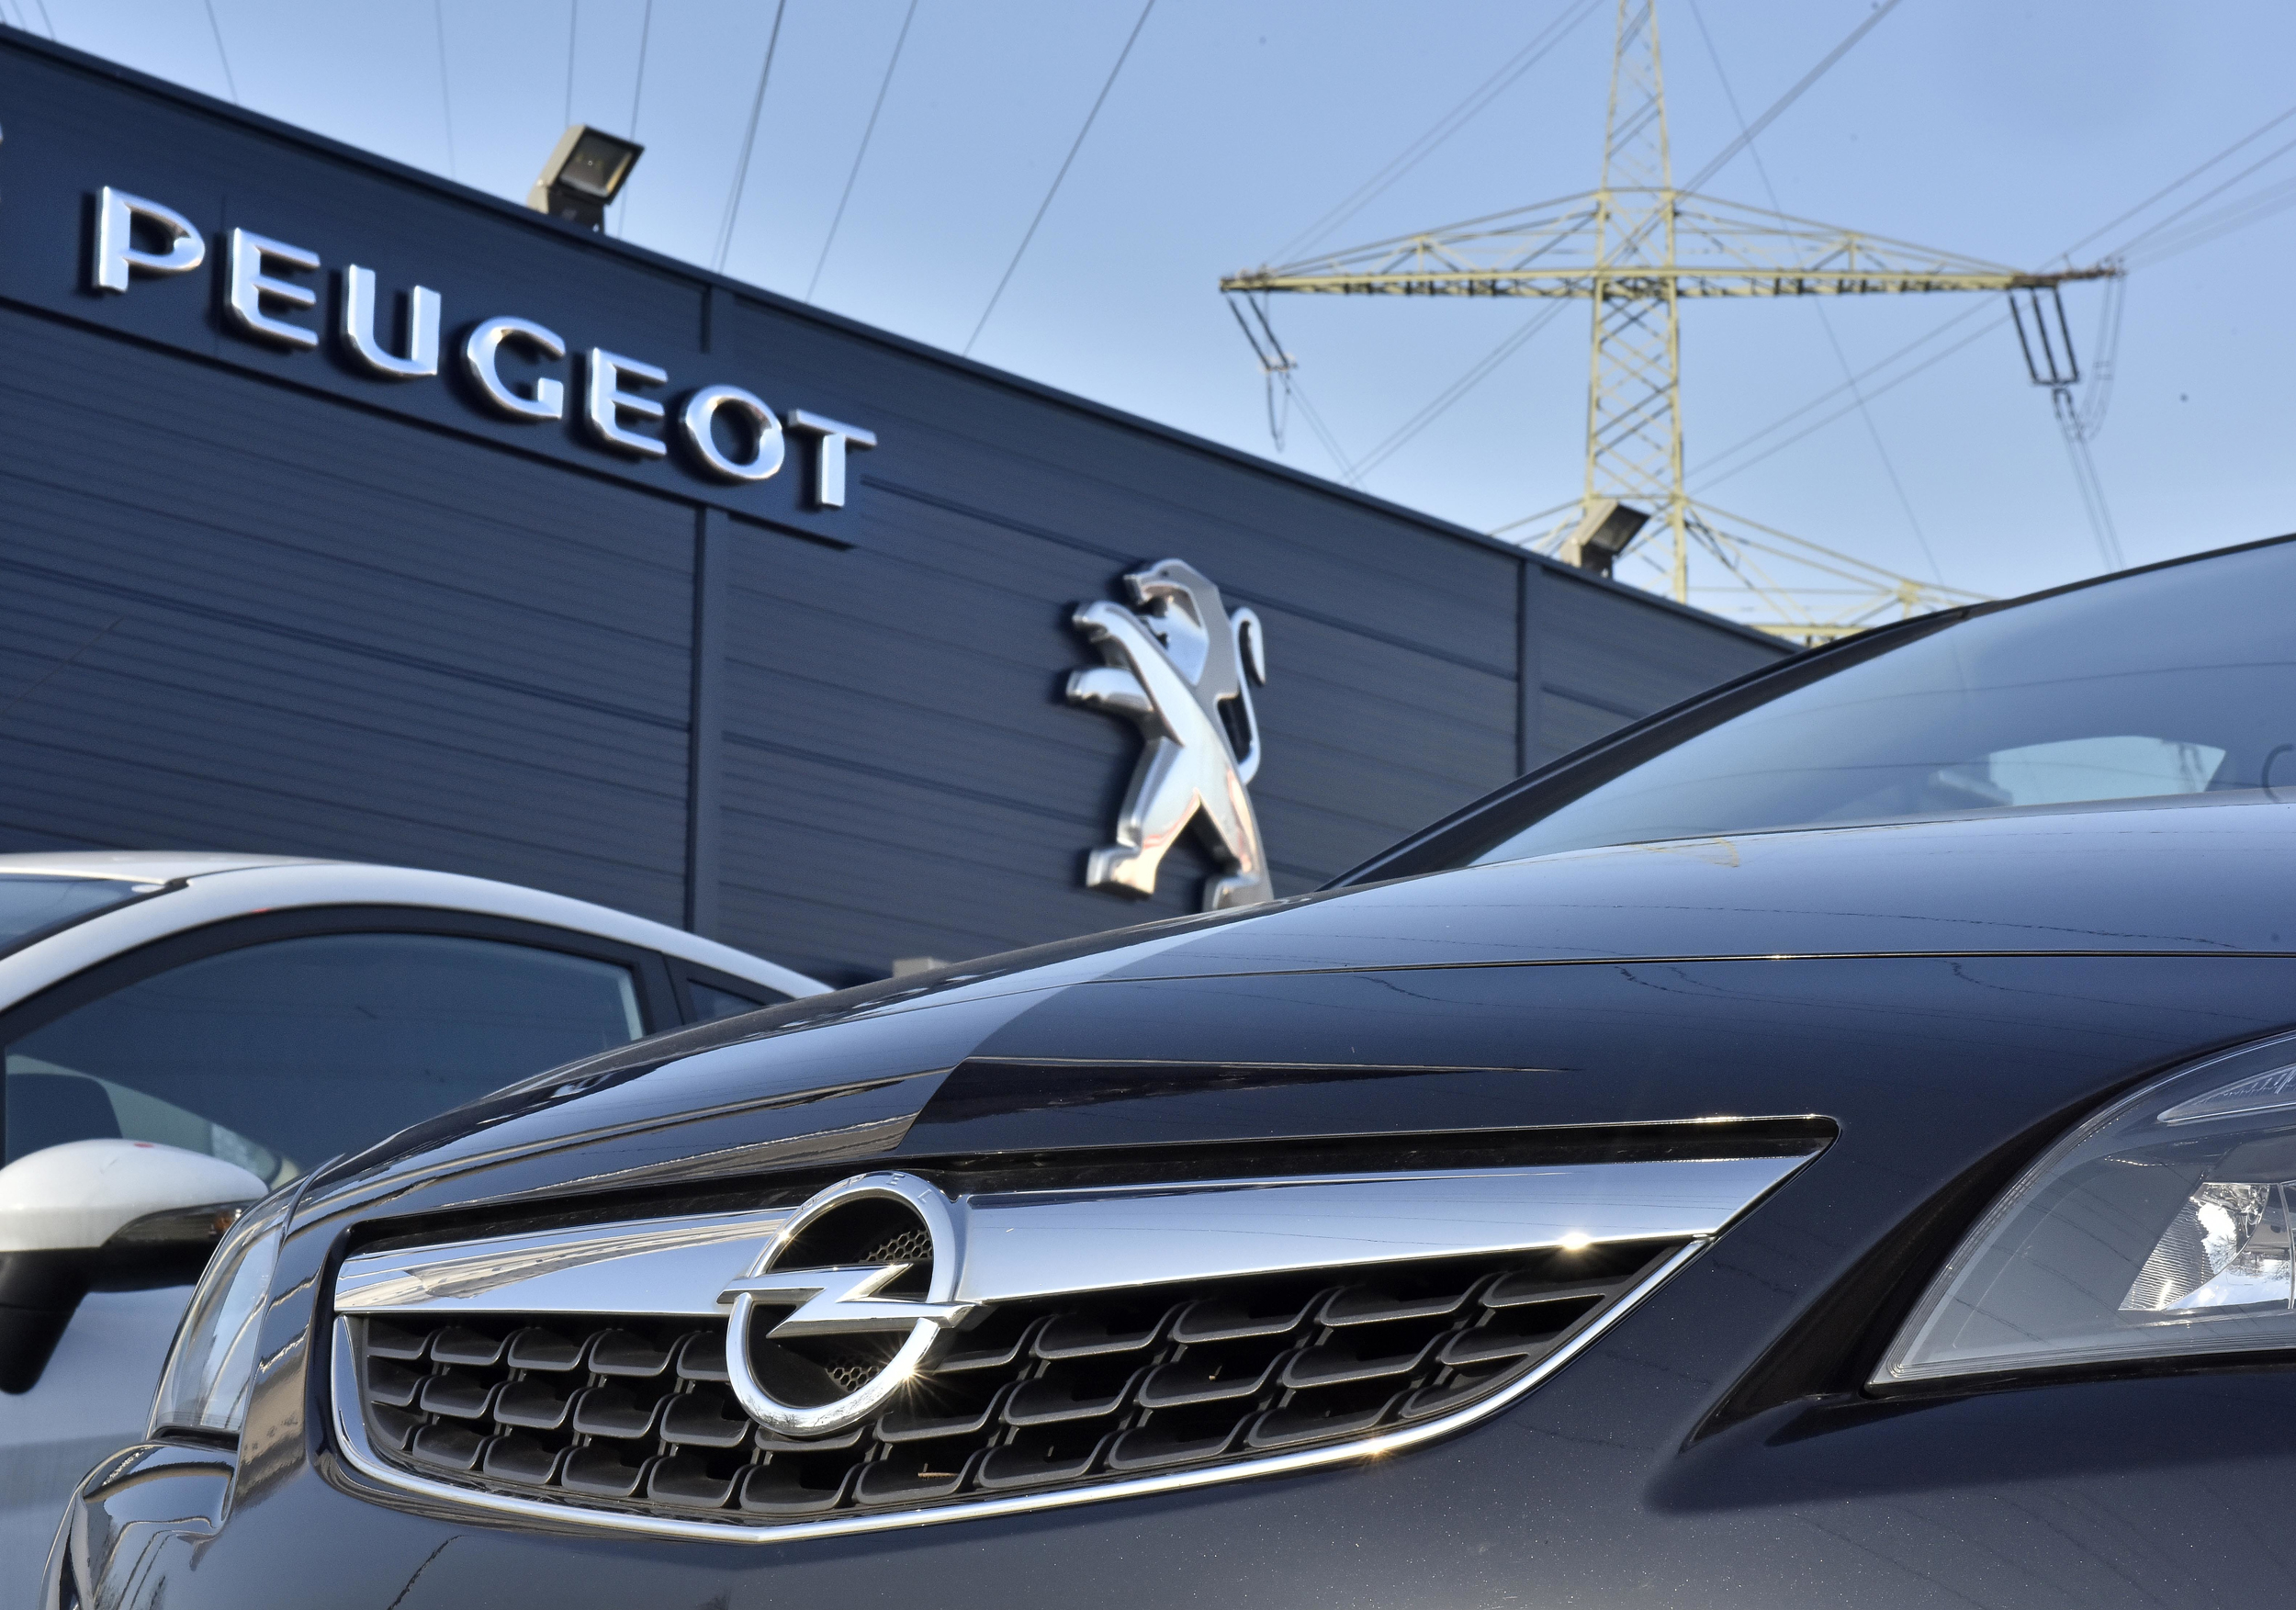 Peugeot opel